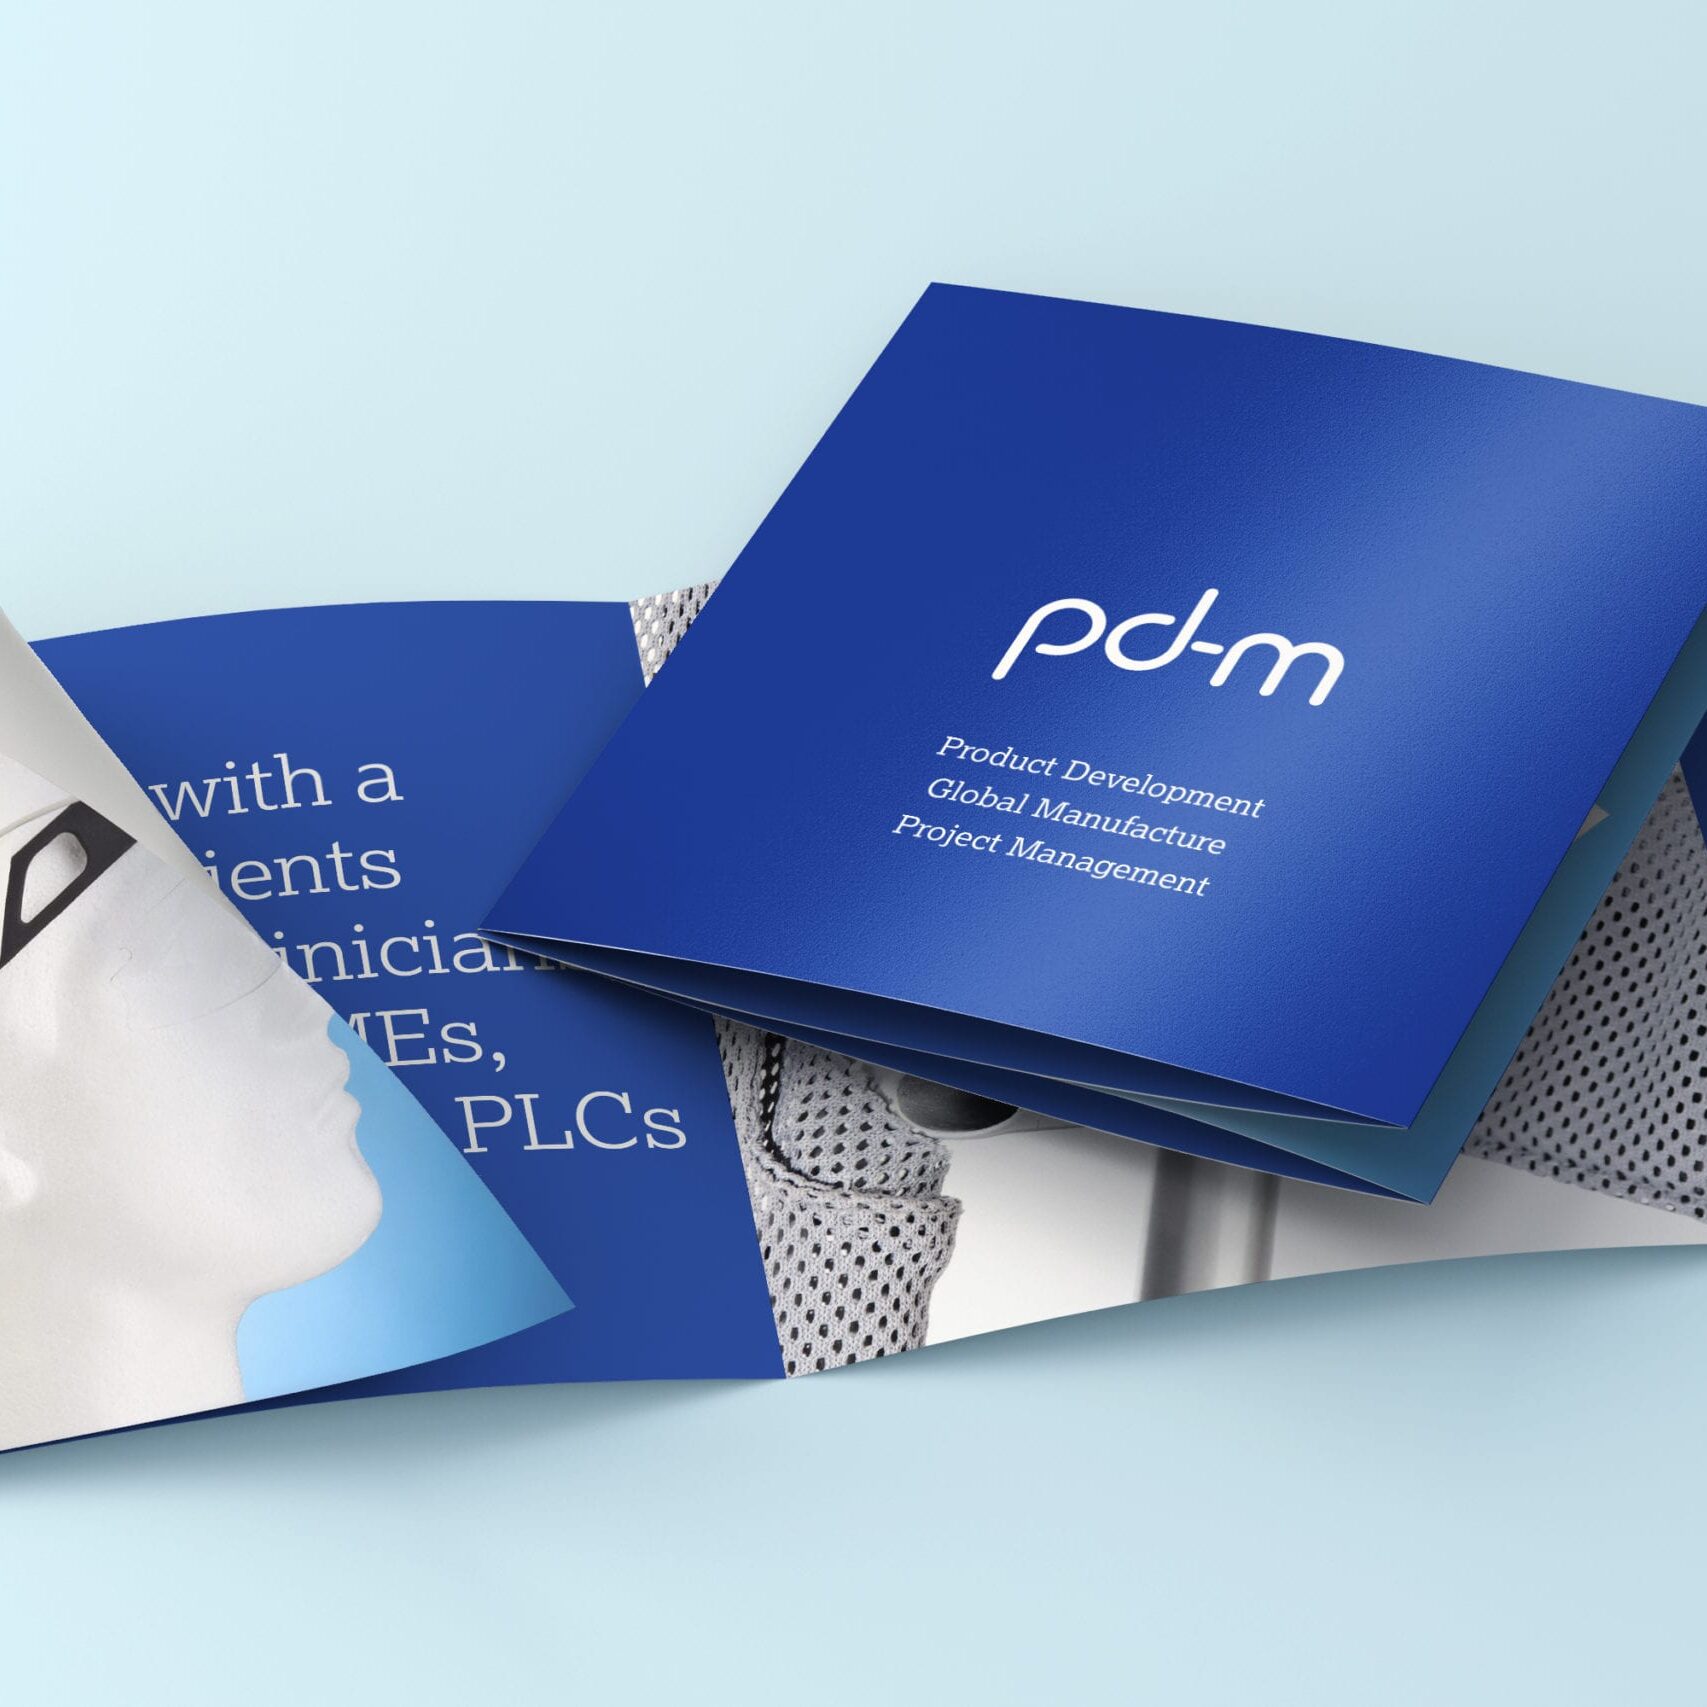 Leaflet design for Pd-m International